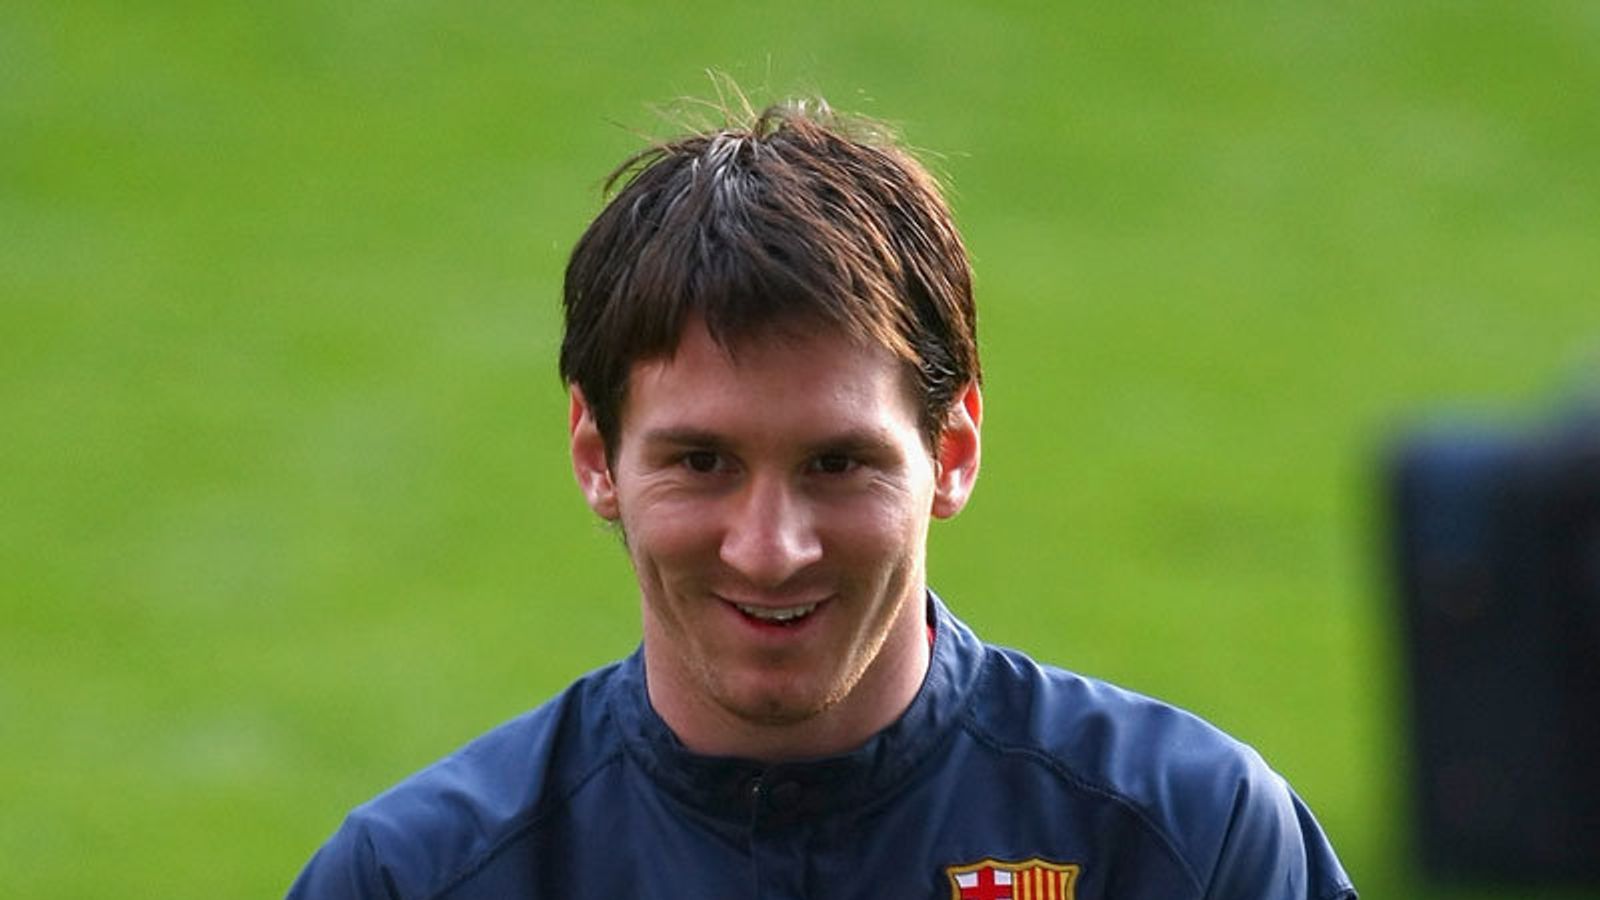 Messi oo ku guuleystay arrin uu sanado badan usoo dagaallamayay - BBC News  Somali